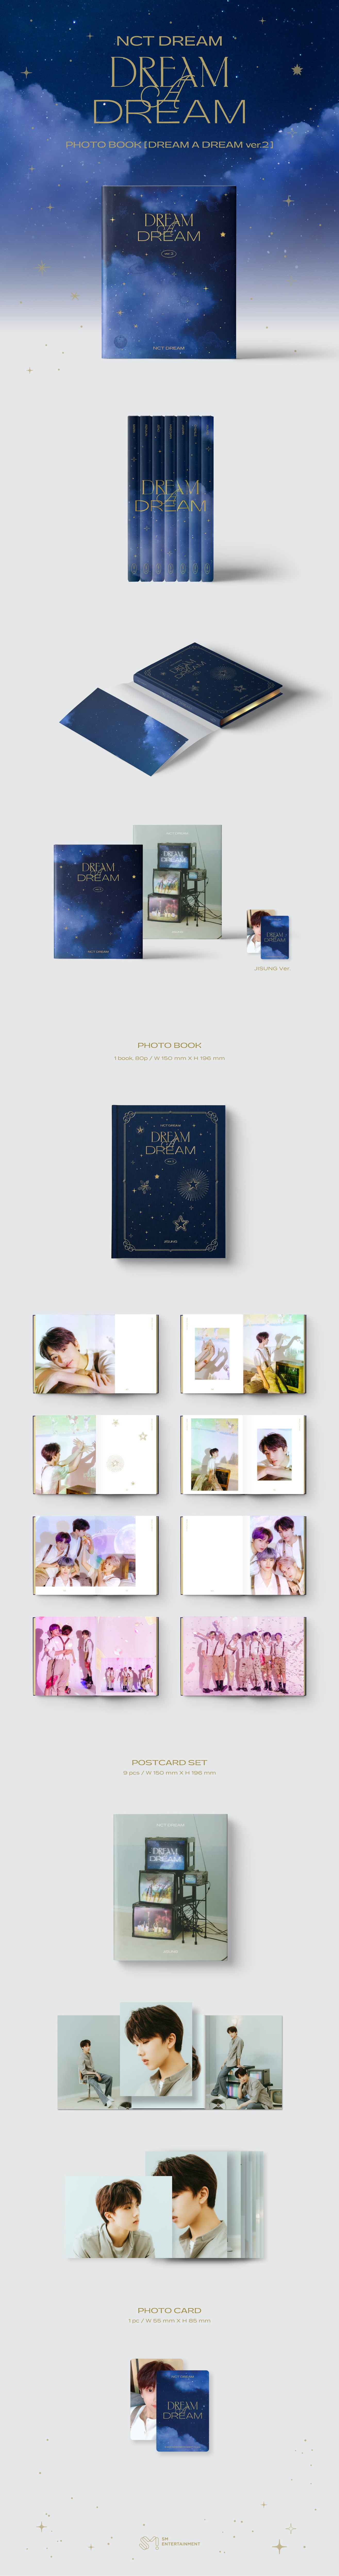 NCT Dream - DREAM A DREAM الإصدار 2 (كتاب صور)